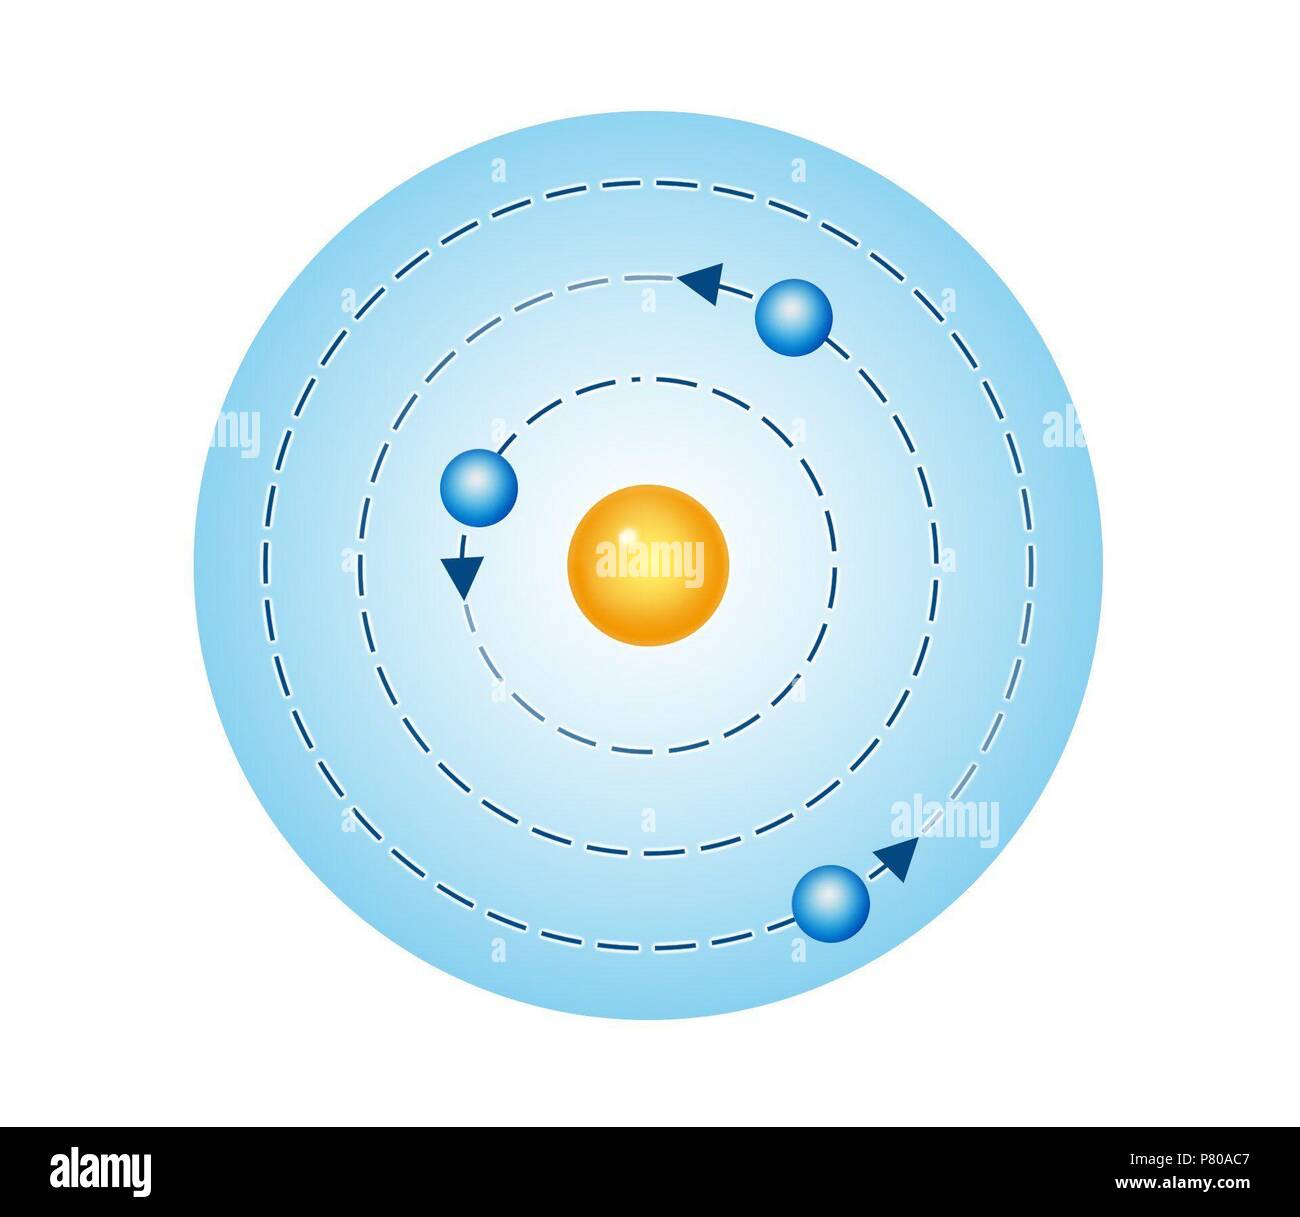 Atom. Atomic model of Niels Bohr. Stock Photo